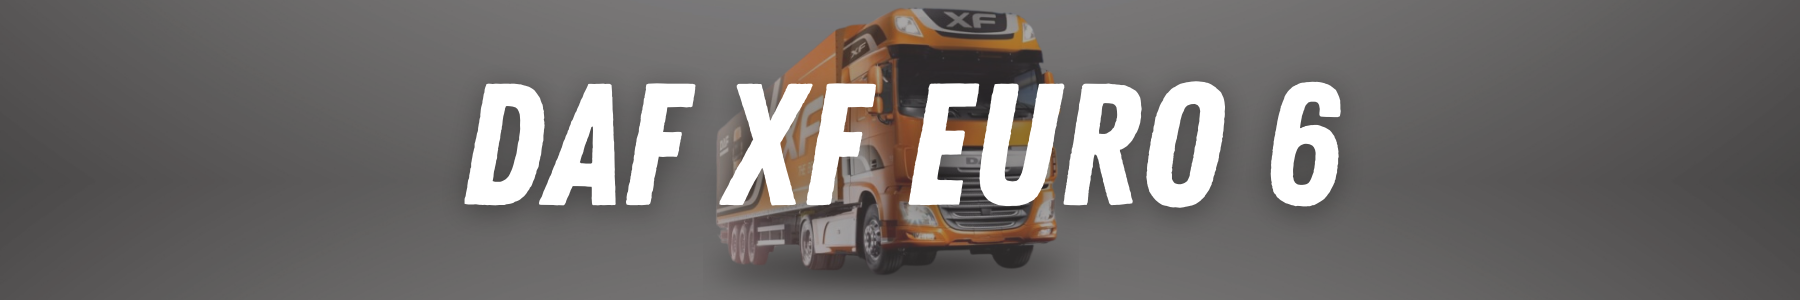 Equipement et accessoires pour votre DAF XF EURO 6 sur 22H22